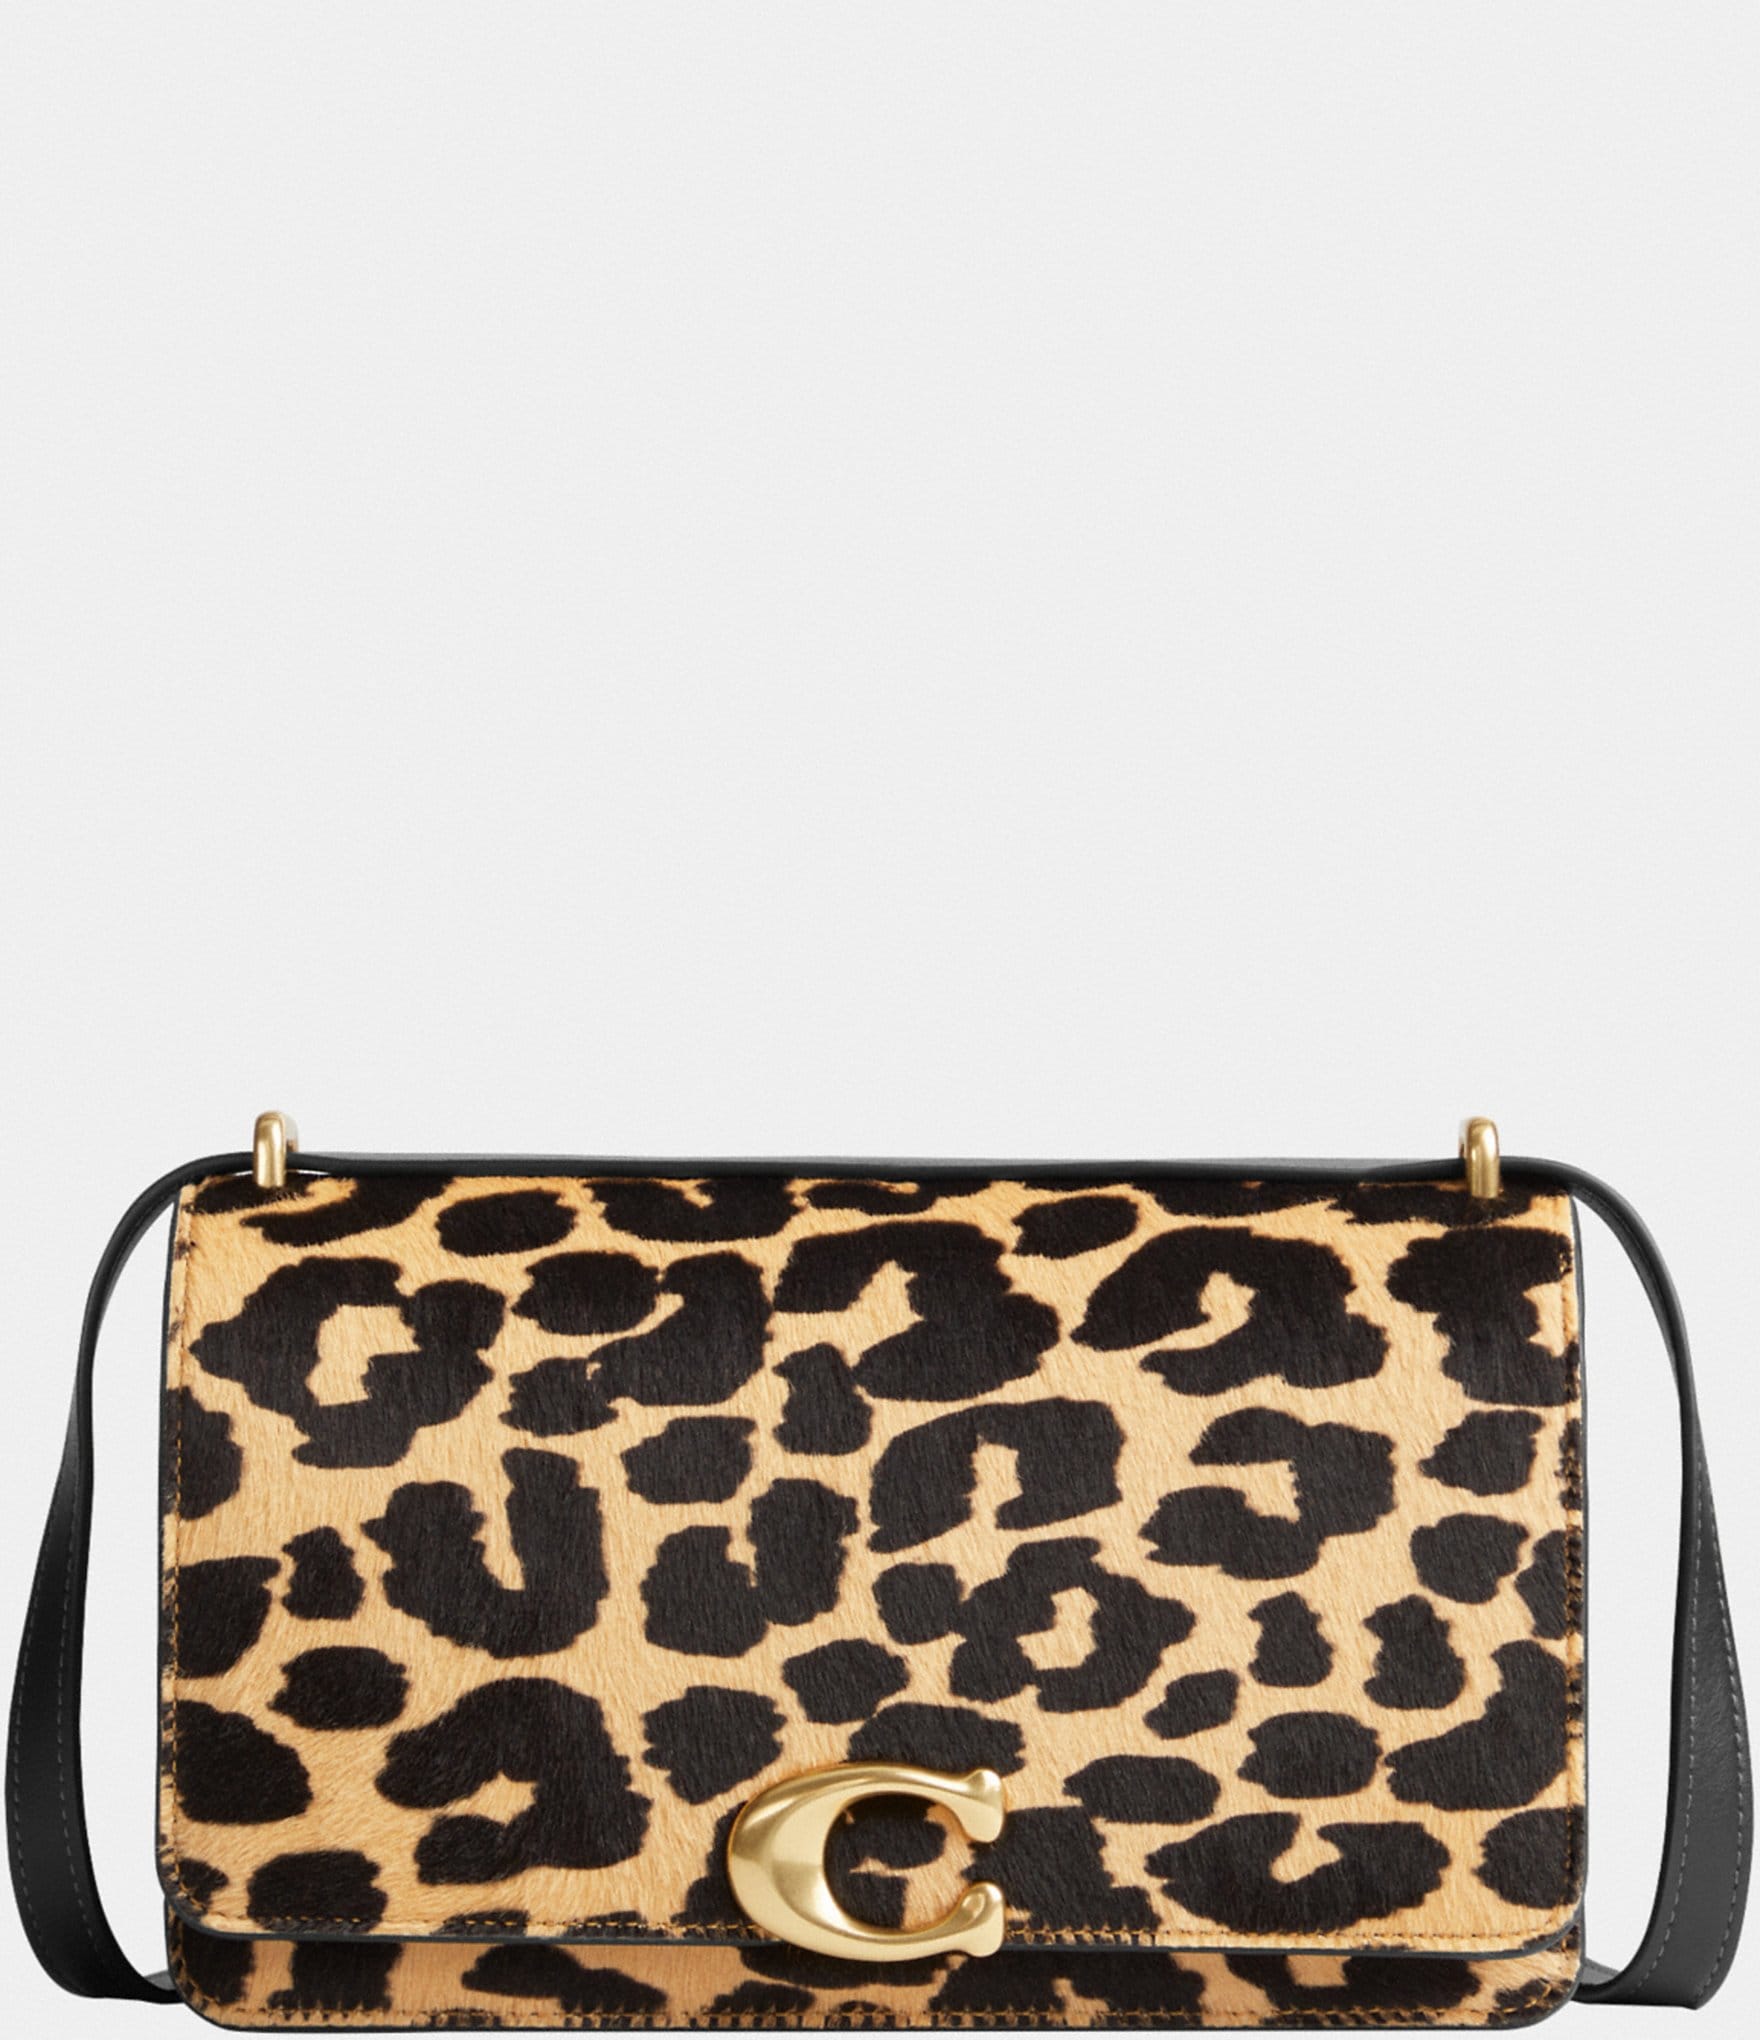 Gold Leather Leopard Print Bag - Bernadette – Sassy Spirit